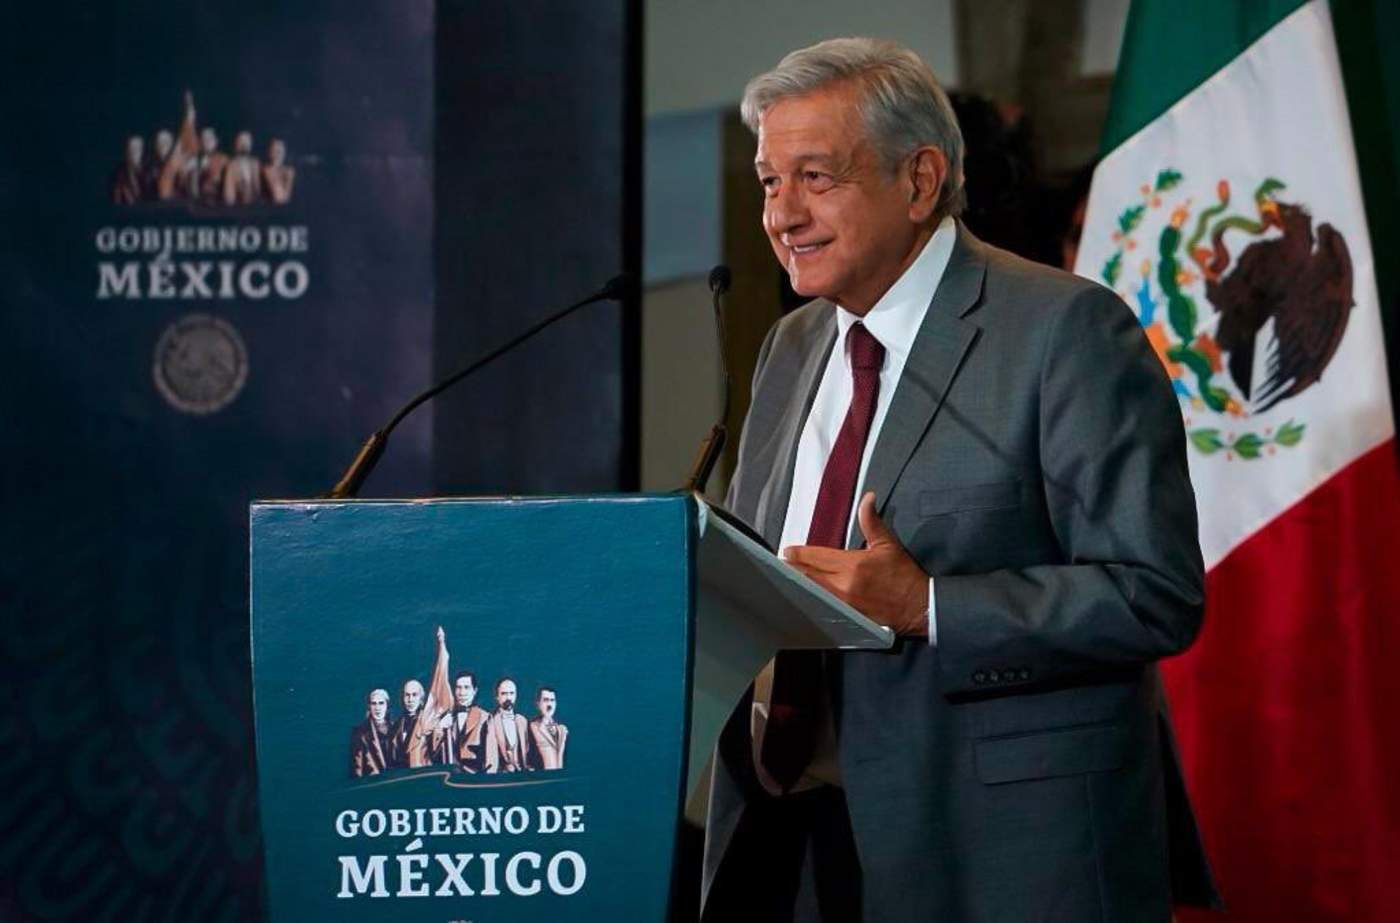 López Obrador apuntó que parte de la inseguridad y violencia que han afectado al país tuvo su origen en la falta de crecimiento económico en el país, lo que cual ahora se pretende revertir con programas como el de la zona libre de la frontera norte. (ESPECIAL)